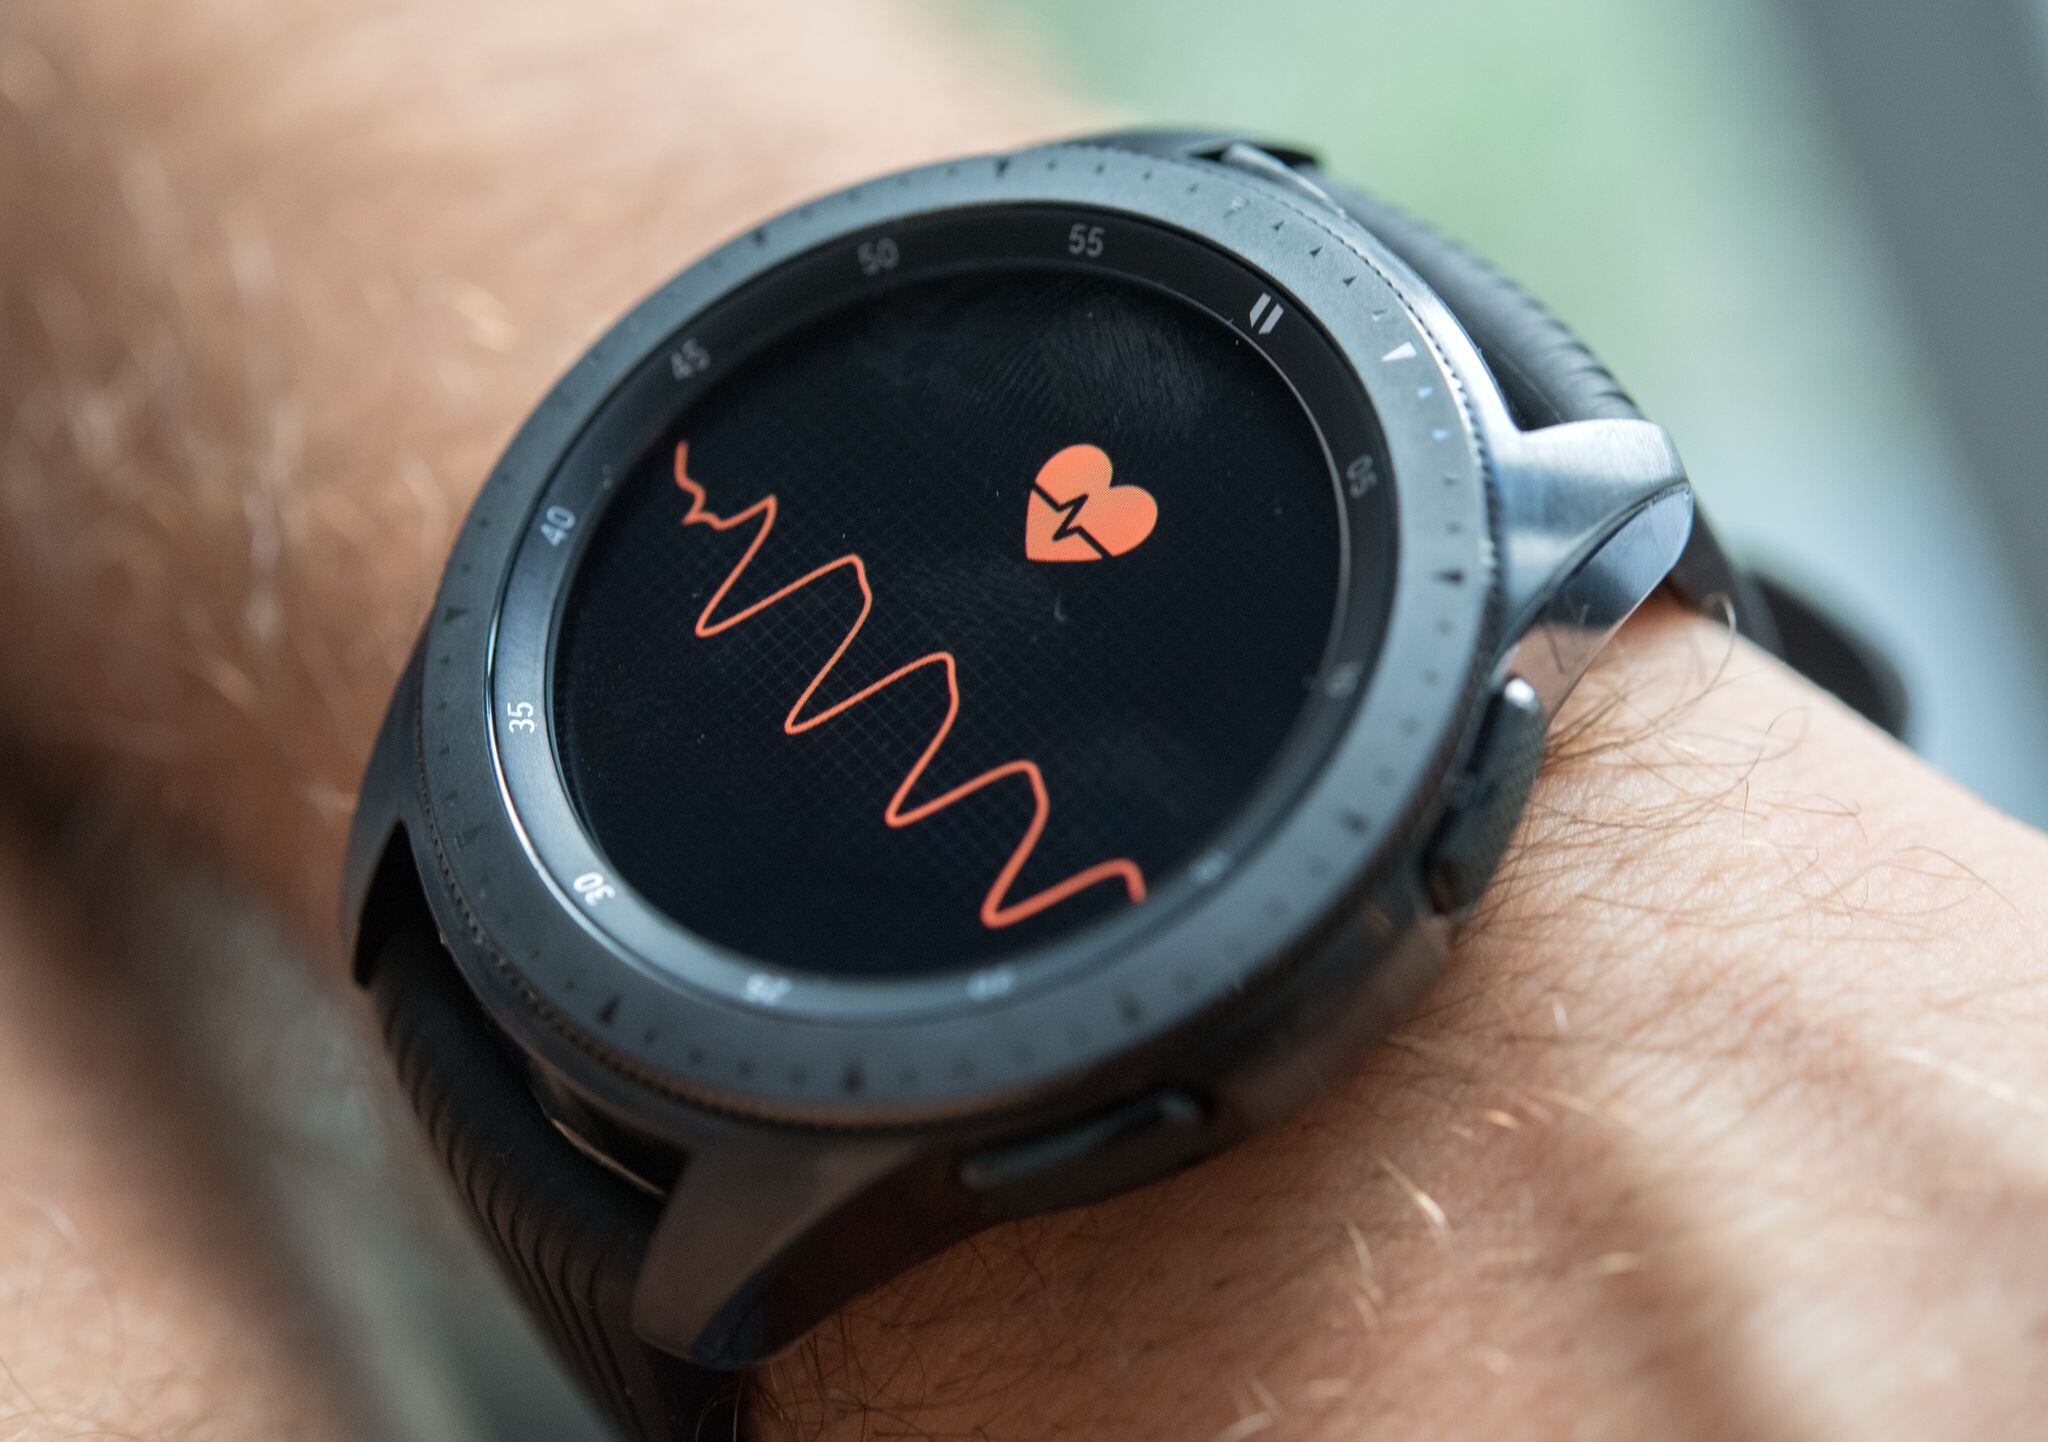  Algunos relojes inteligentes traen incorporado un medidor del ritmo cardiaco. Foto: Andrea Warnecke/dpa